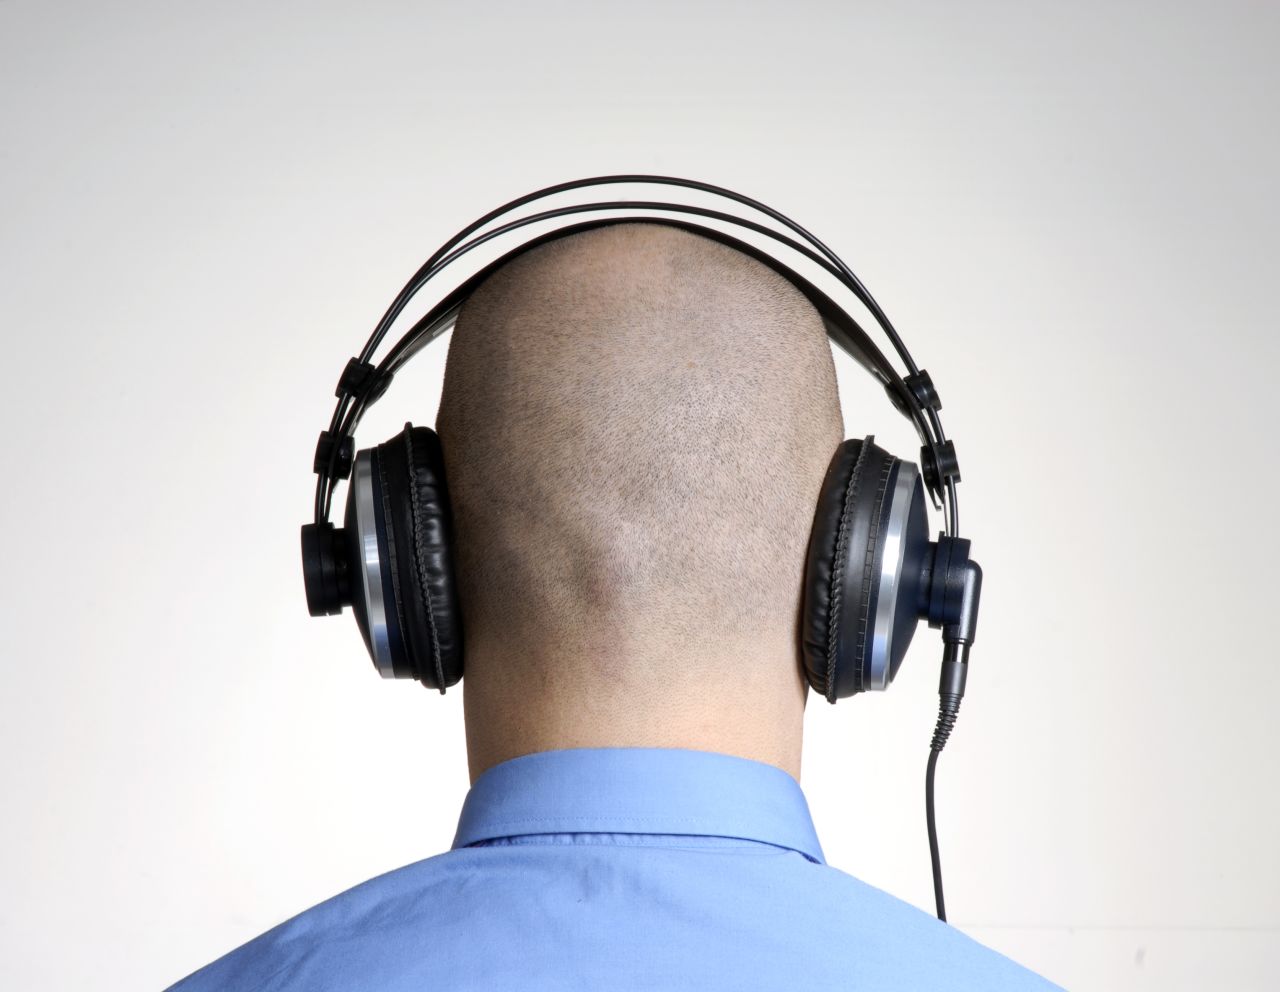 bald man headphones